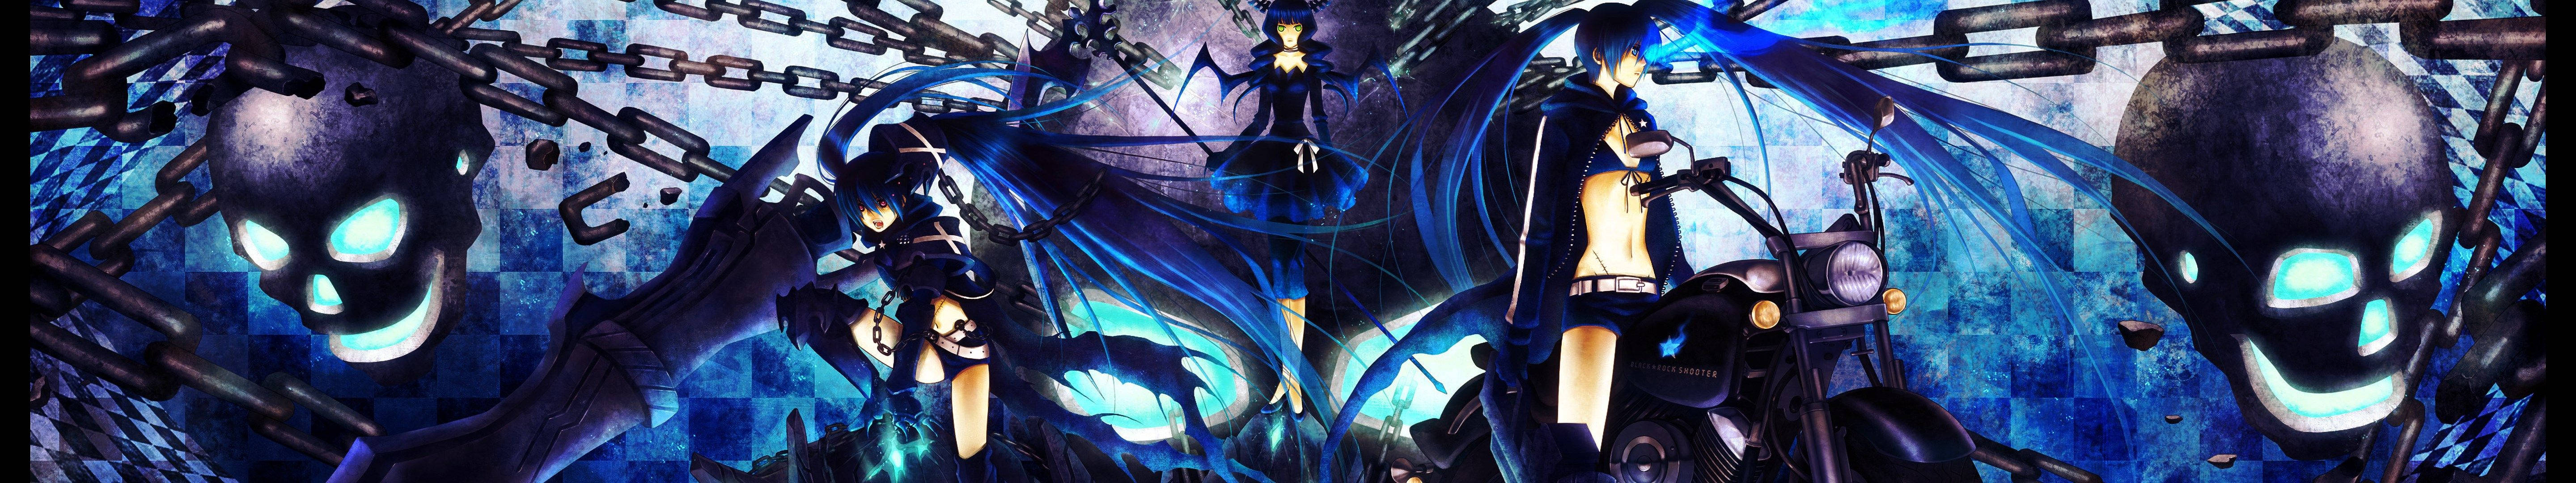 Black Rock Shooter Blue Anime Girl wallpaper.